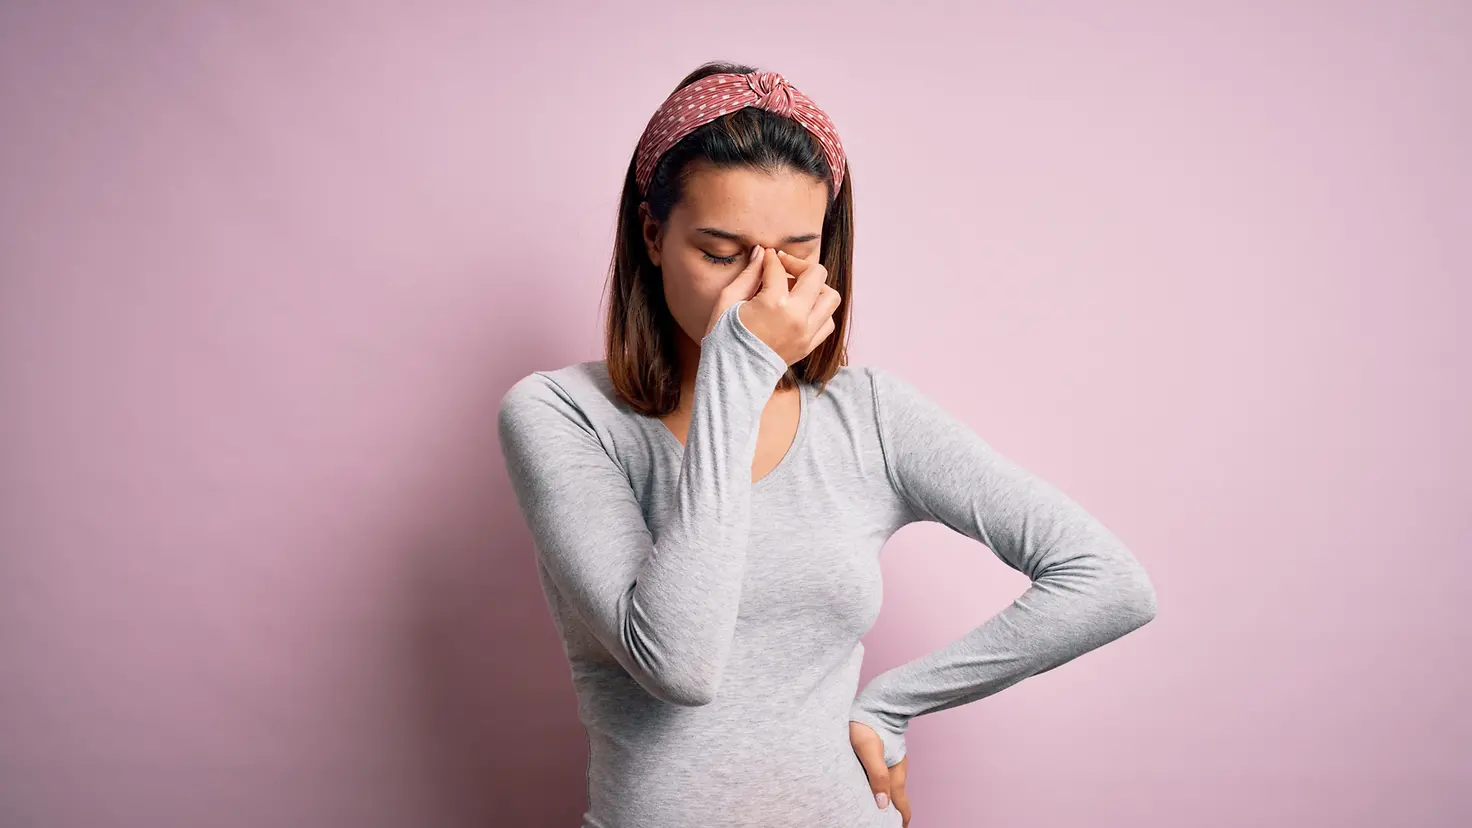 Das Bild zeigt eine schwangere Frau vor einer rosafarbenen Wand.